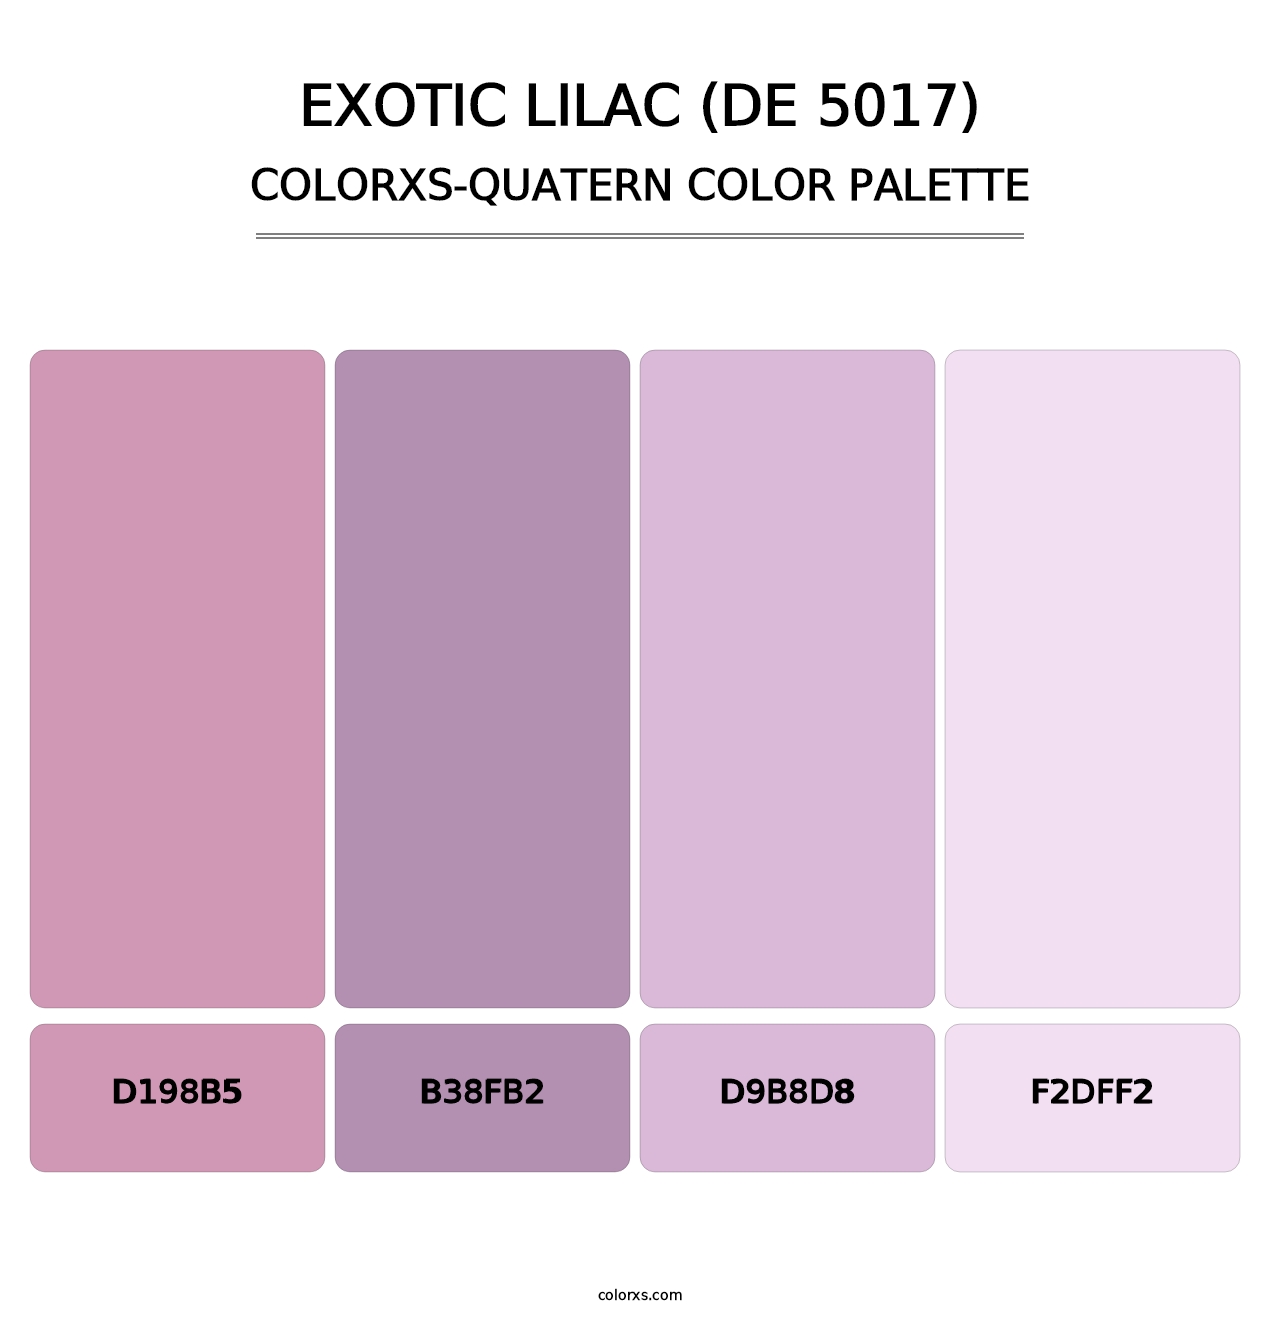 Exotic Lilac (DE 5017) - Colorxs Quatern Palette